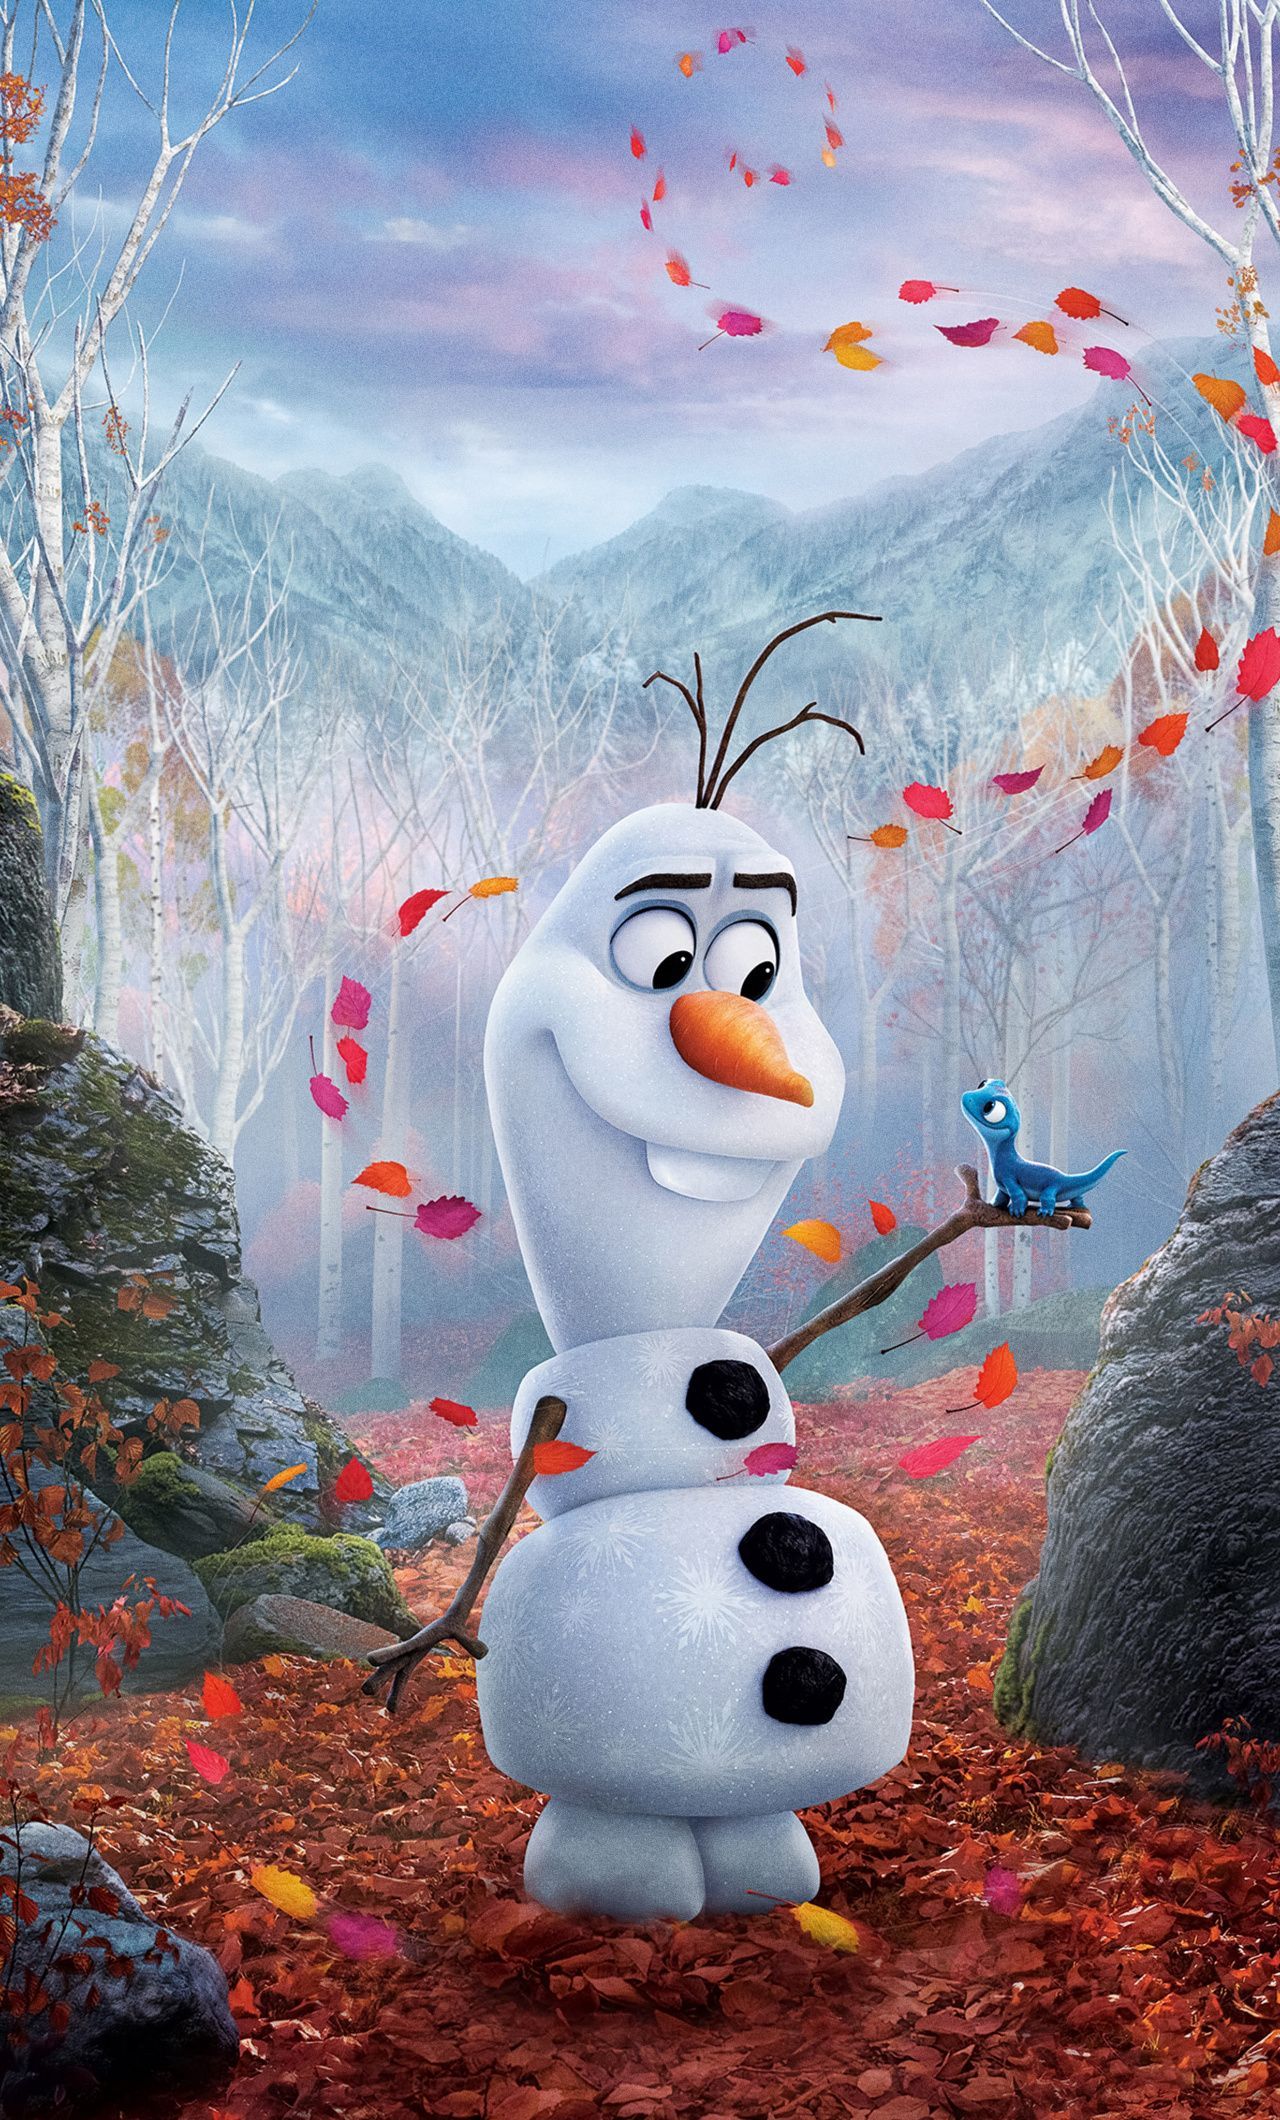 Happy Snowman, Olaf, Frozen movie, 2019 wallpaper. Disney wallpaper, Cute disney wallpaper, Disney phone wallpaper